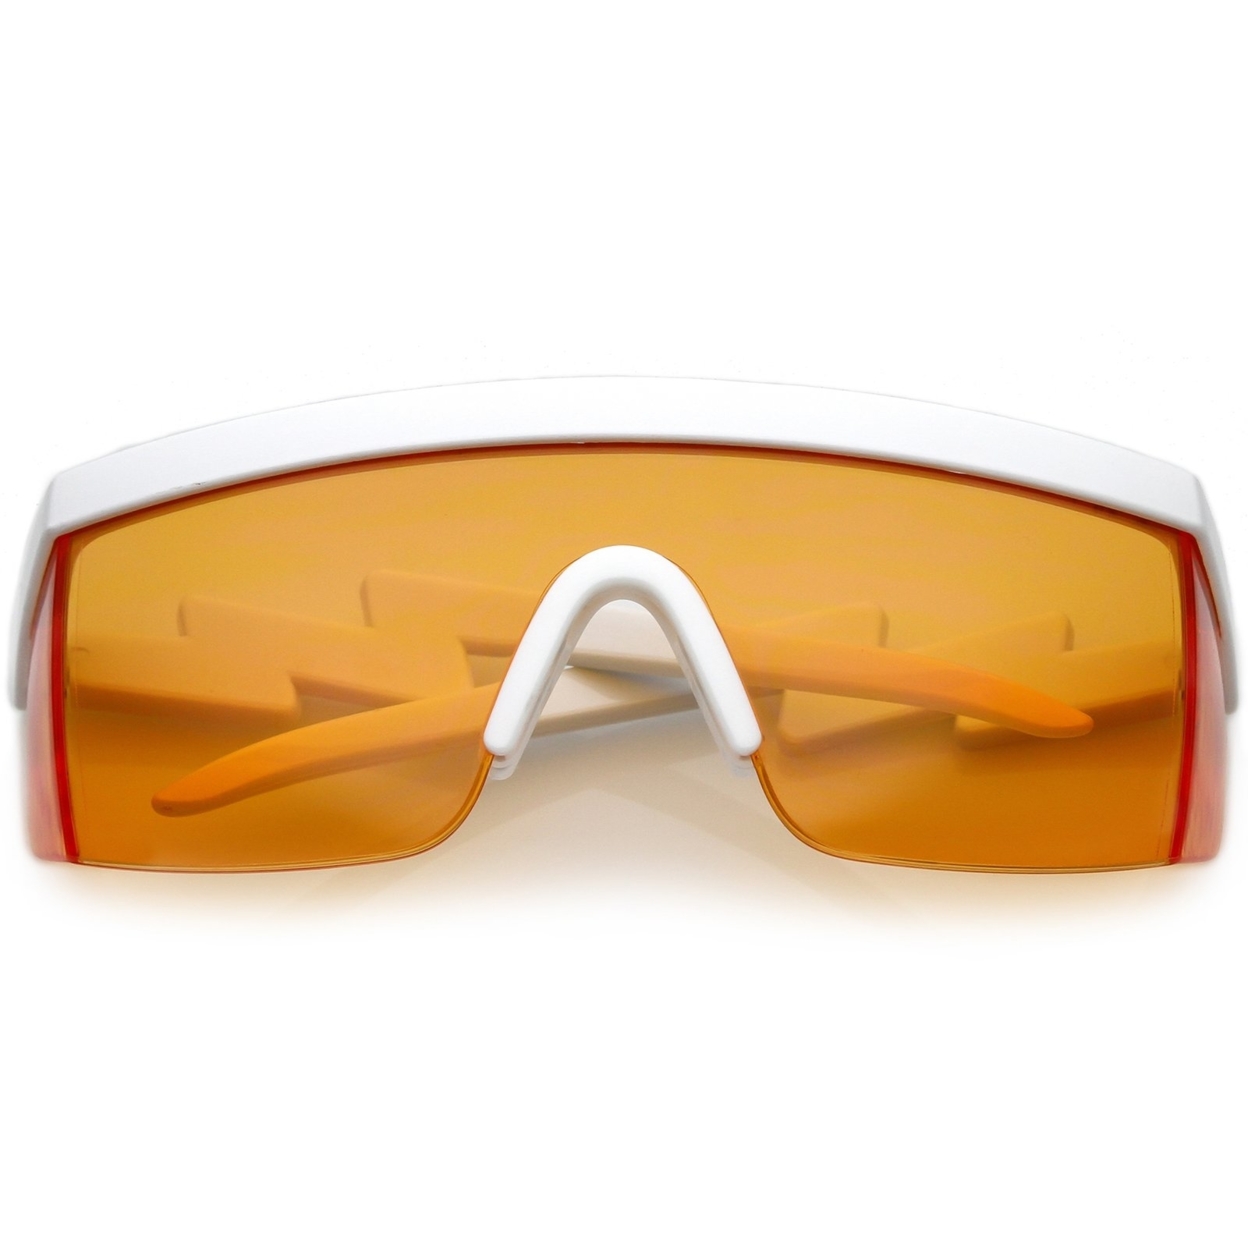 Oversize Semi Rimless Goggle Shield Sunglasses Color Lens 60mm - White / Orange